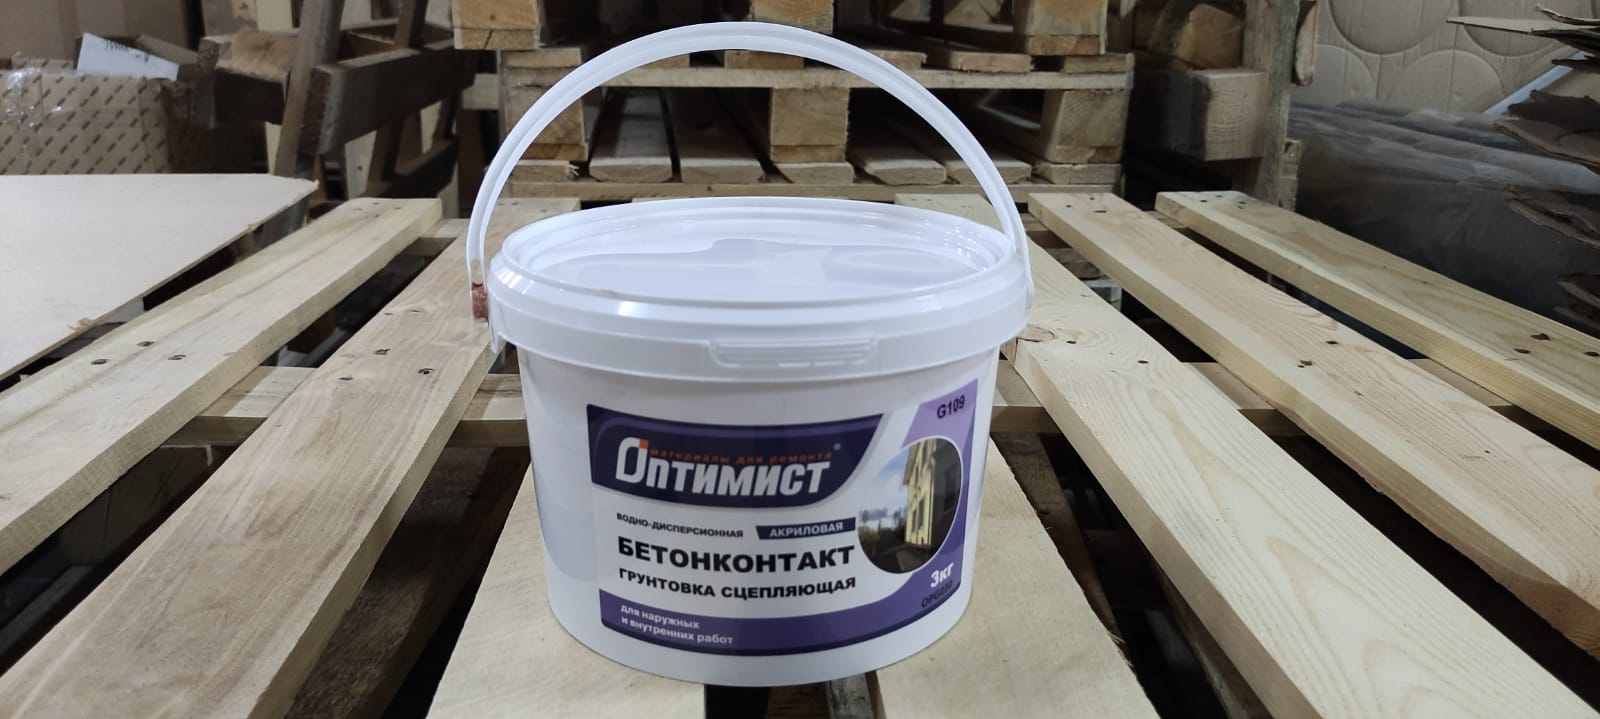 Грунтовка бетонконтакт (бетоноконтакт) для стен и пола морозостойкая 3 кг ОПТИМИСТ G 109								